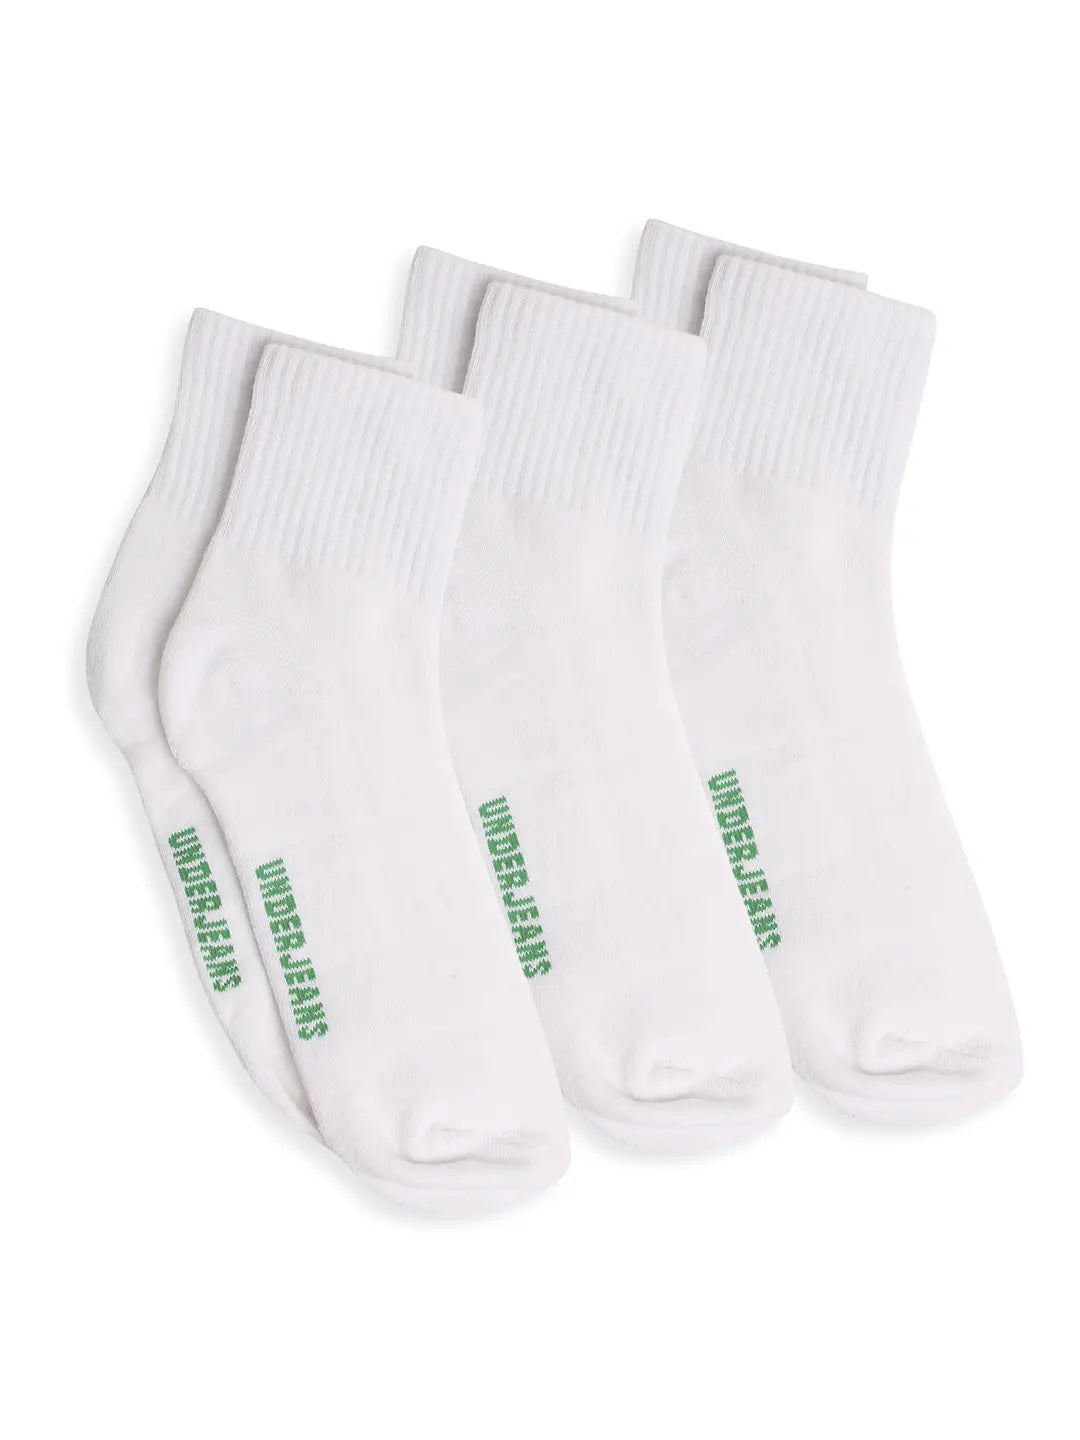 Men Premium White Cotton Socks - Pack Of 3- UnderJeans by Spykar